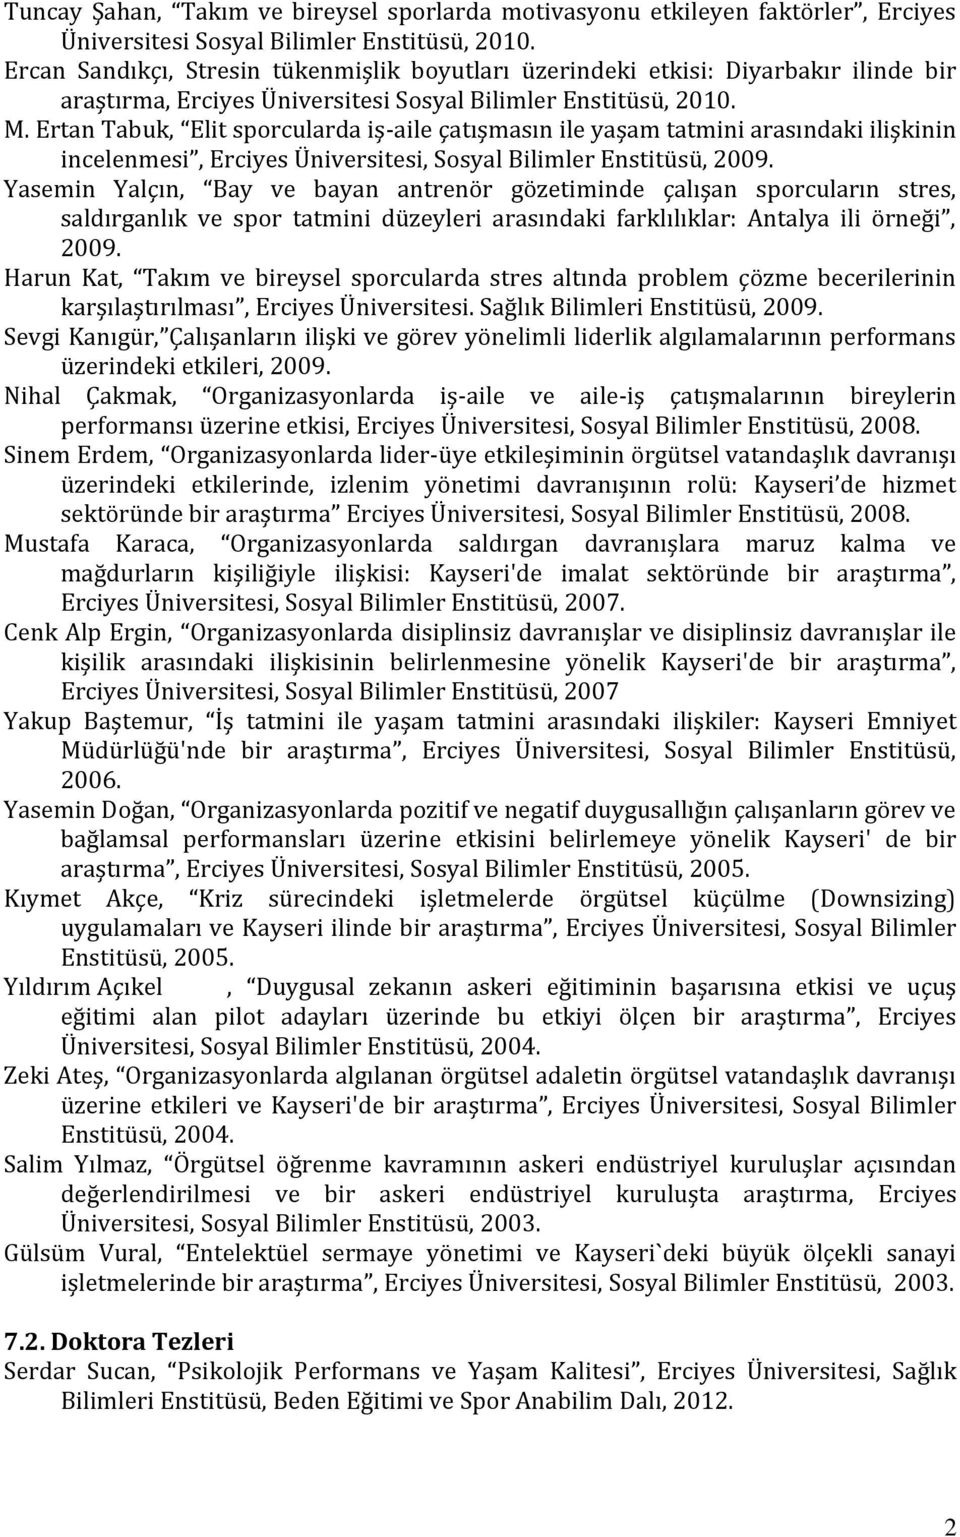 Ertan Tabuk, Elit sporcularda iş-aile çatışmasın ile yaşam tatmini arasındaki ilişkinin incelenmesi, Erciyes Üniversitesi, Sosyal Bilimler Enstitüsü, 2009.